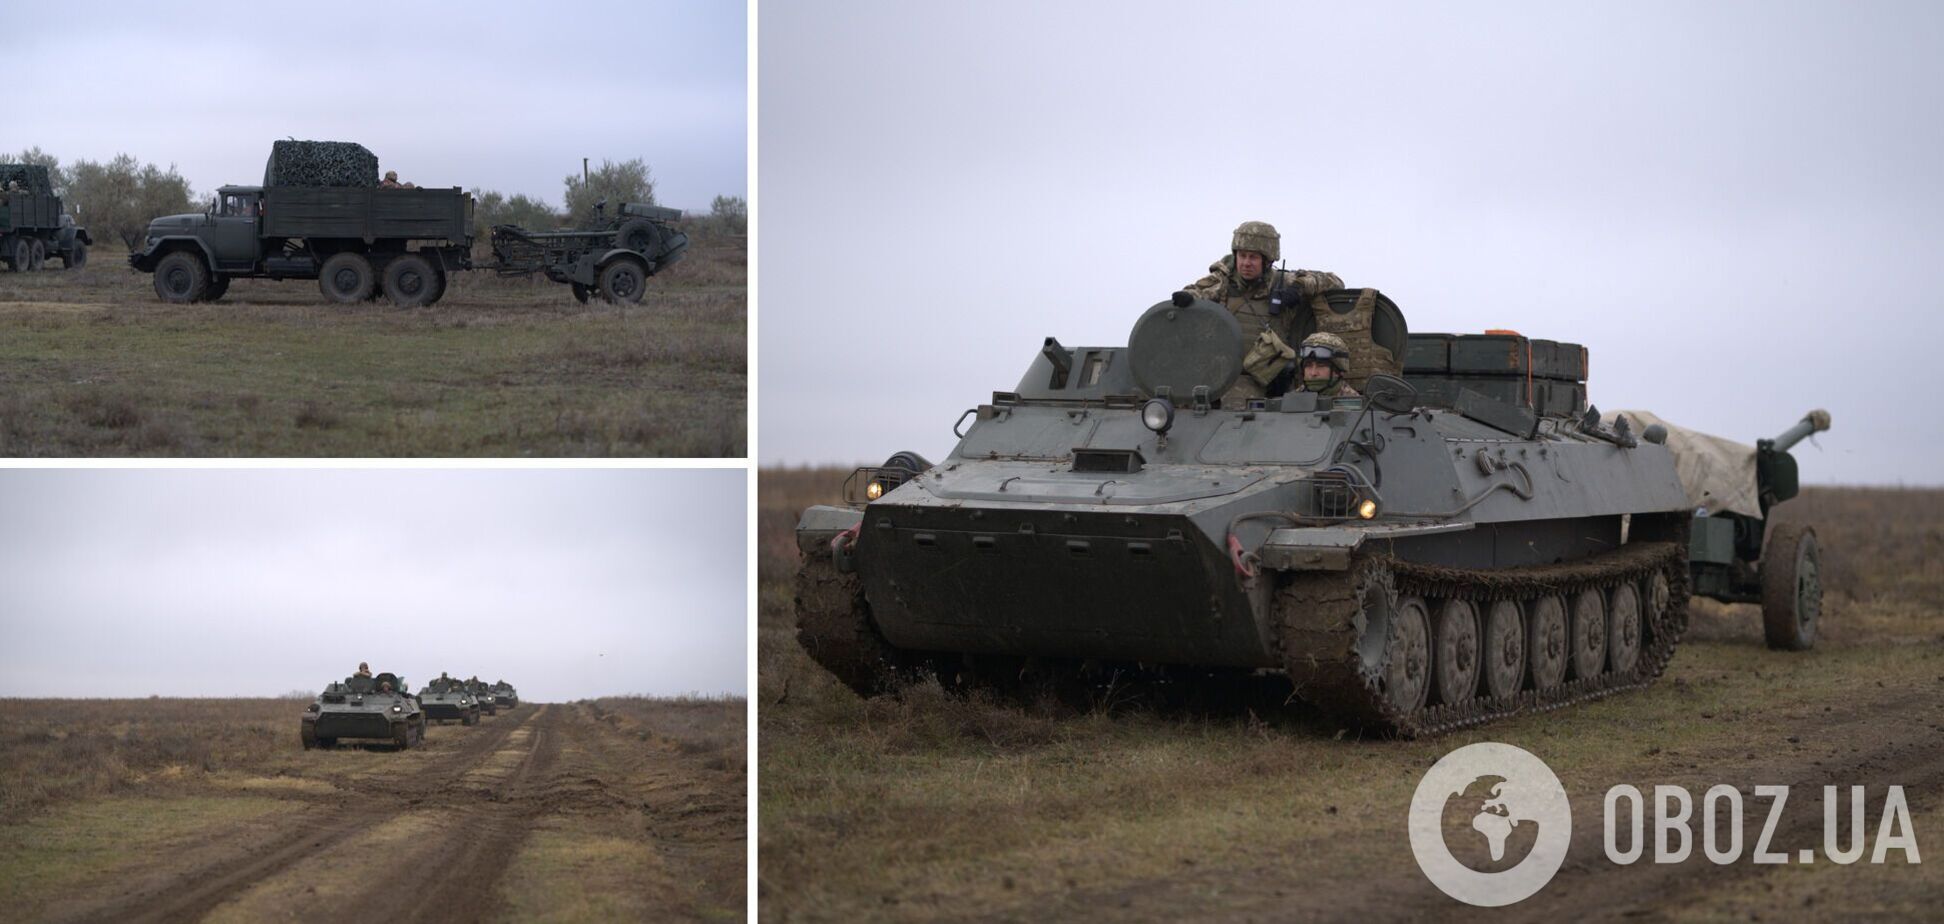 ВСУ провели учения вблизи админграницы с Крымом: отбивали атаку врага. Фото и видео